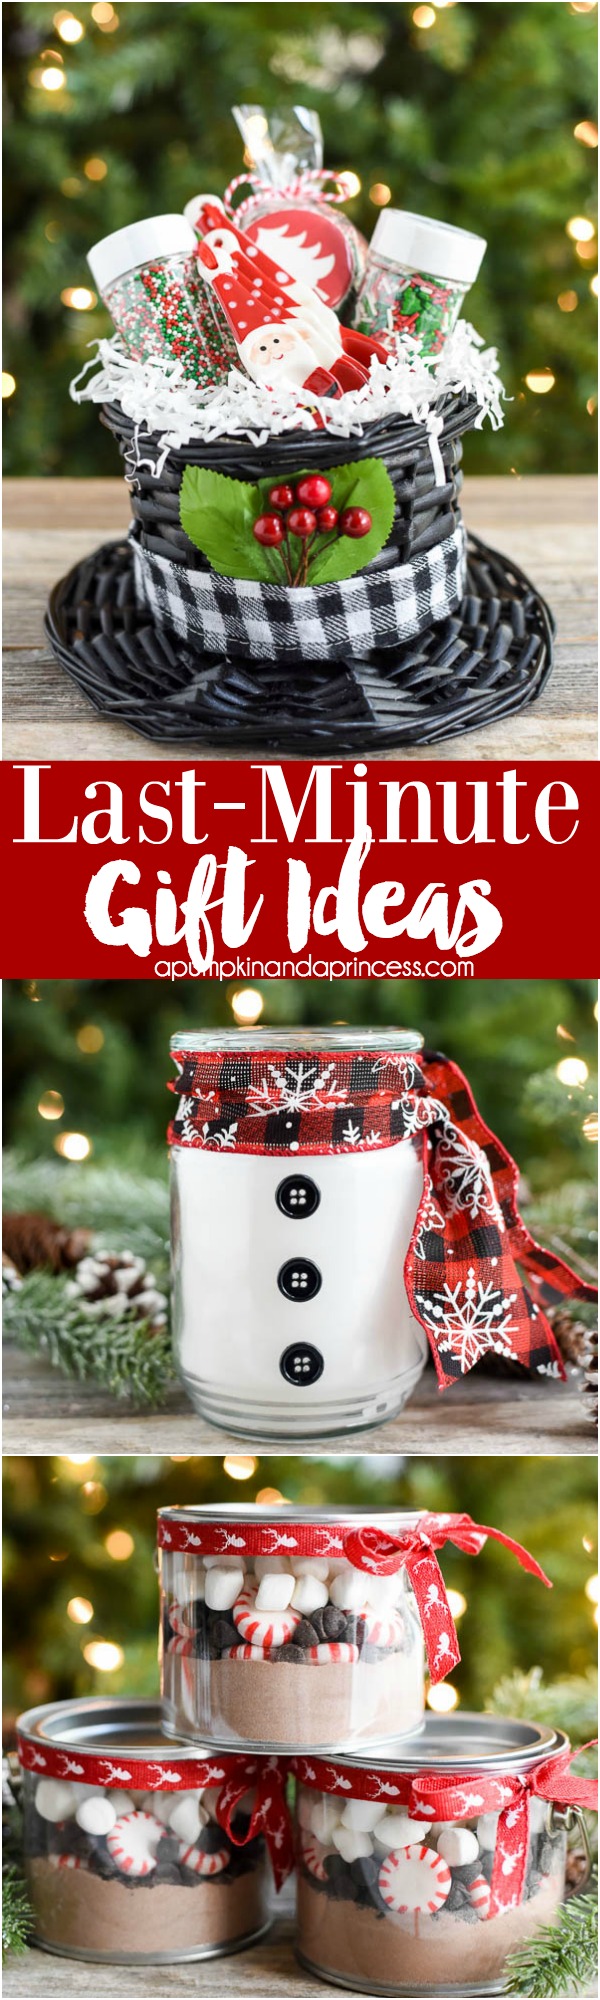 Last-Minute-Handmade-Gift-Ideas